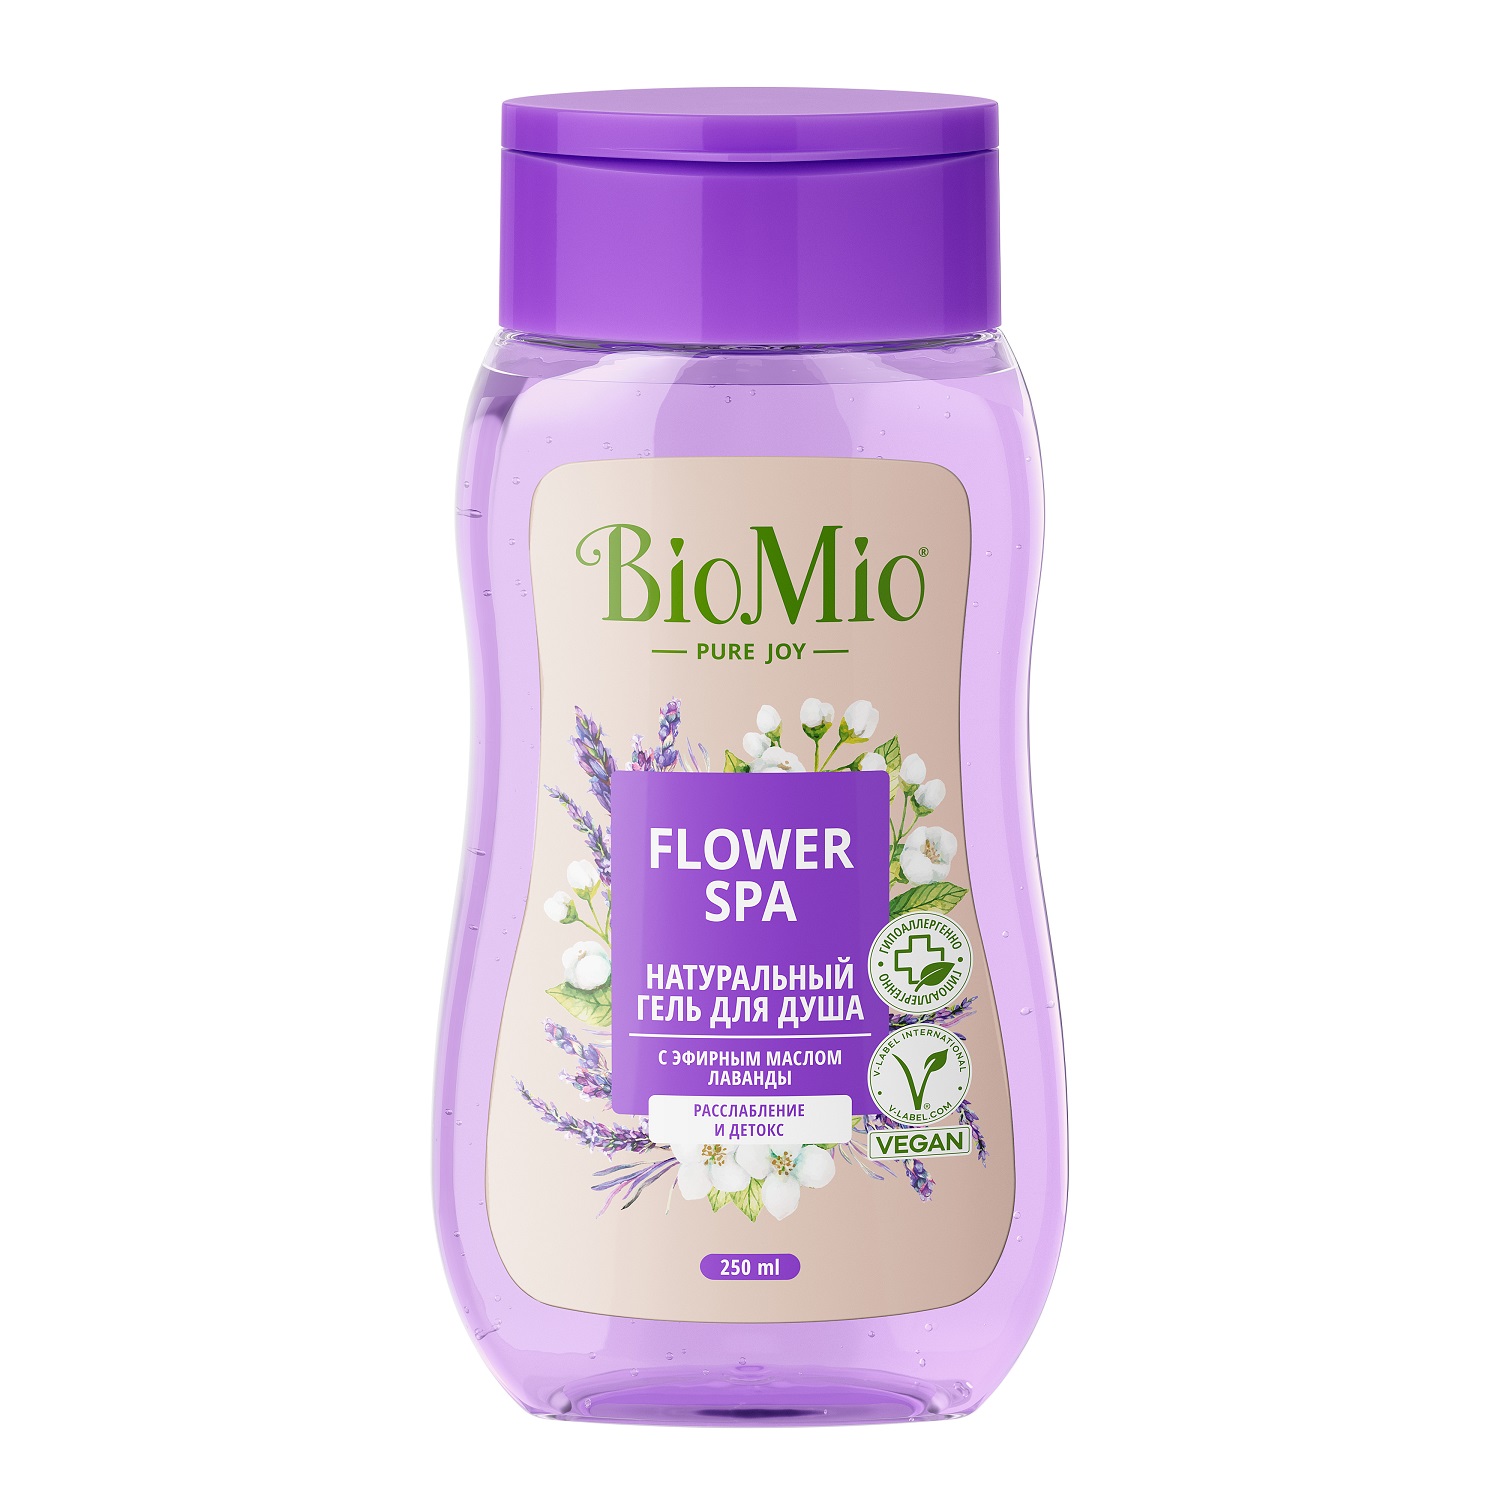 BioMio Гель для душа с эфирными маслами лаванды Flower Spa 3+, 250 мл (BioMio, Для ванны и душа) косметика для мамы biomio натуральный гель душа с эфирным маслом лаванды 650 мл